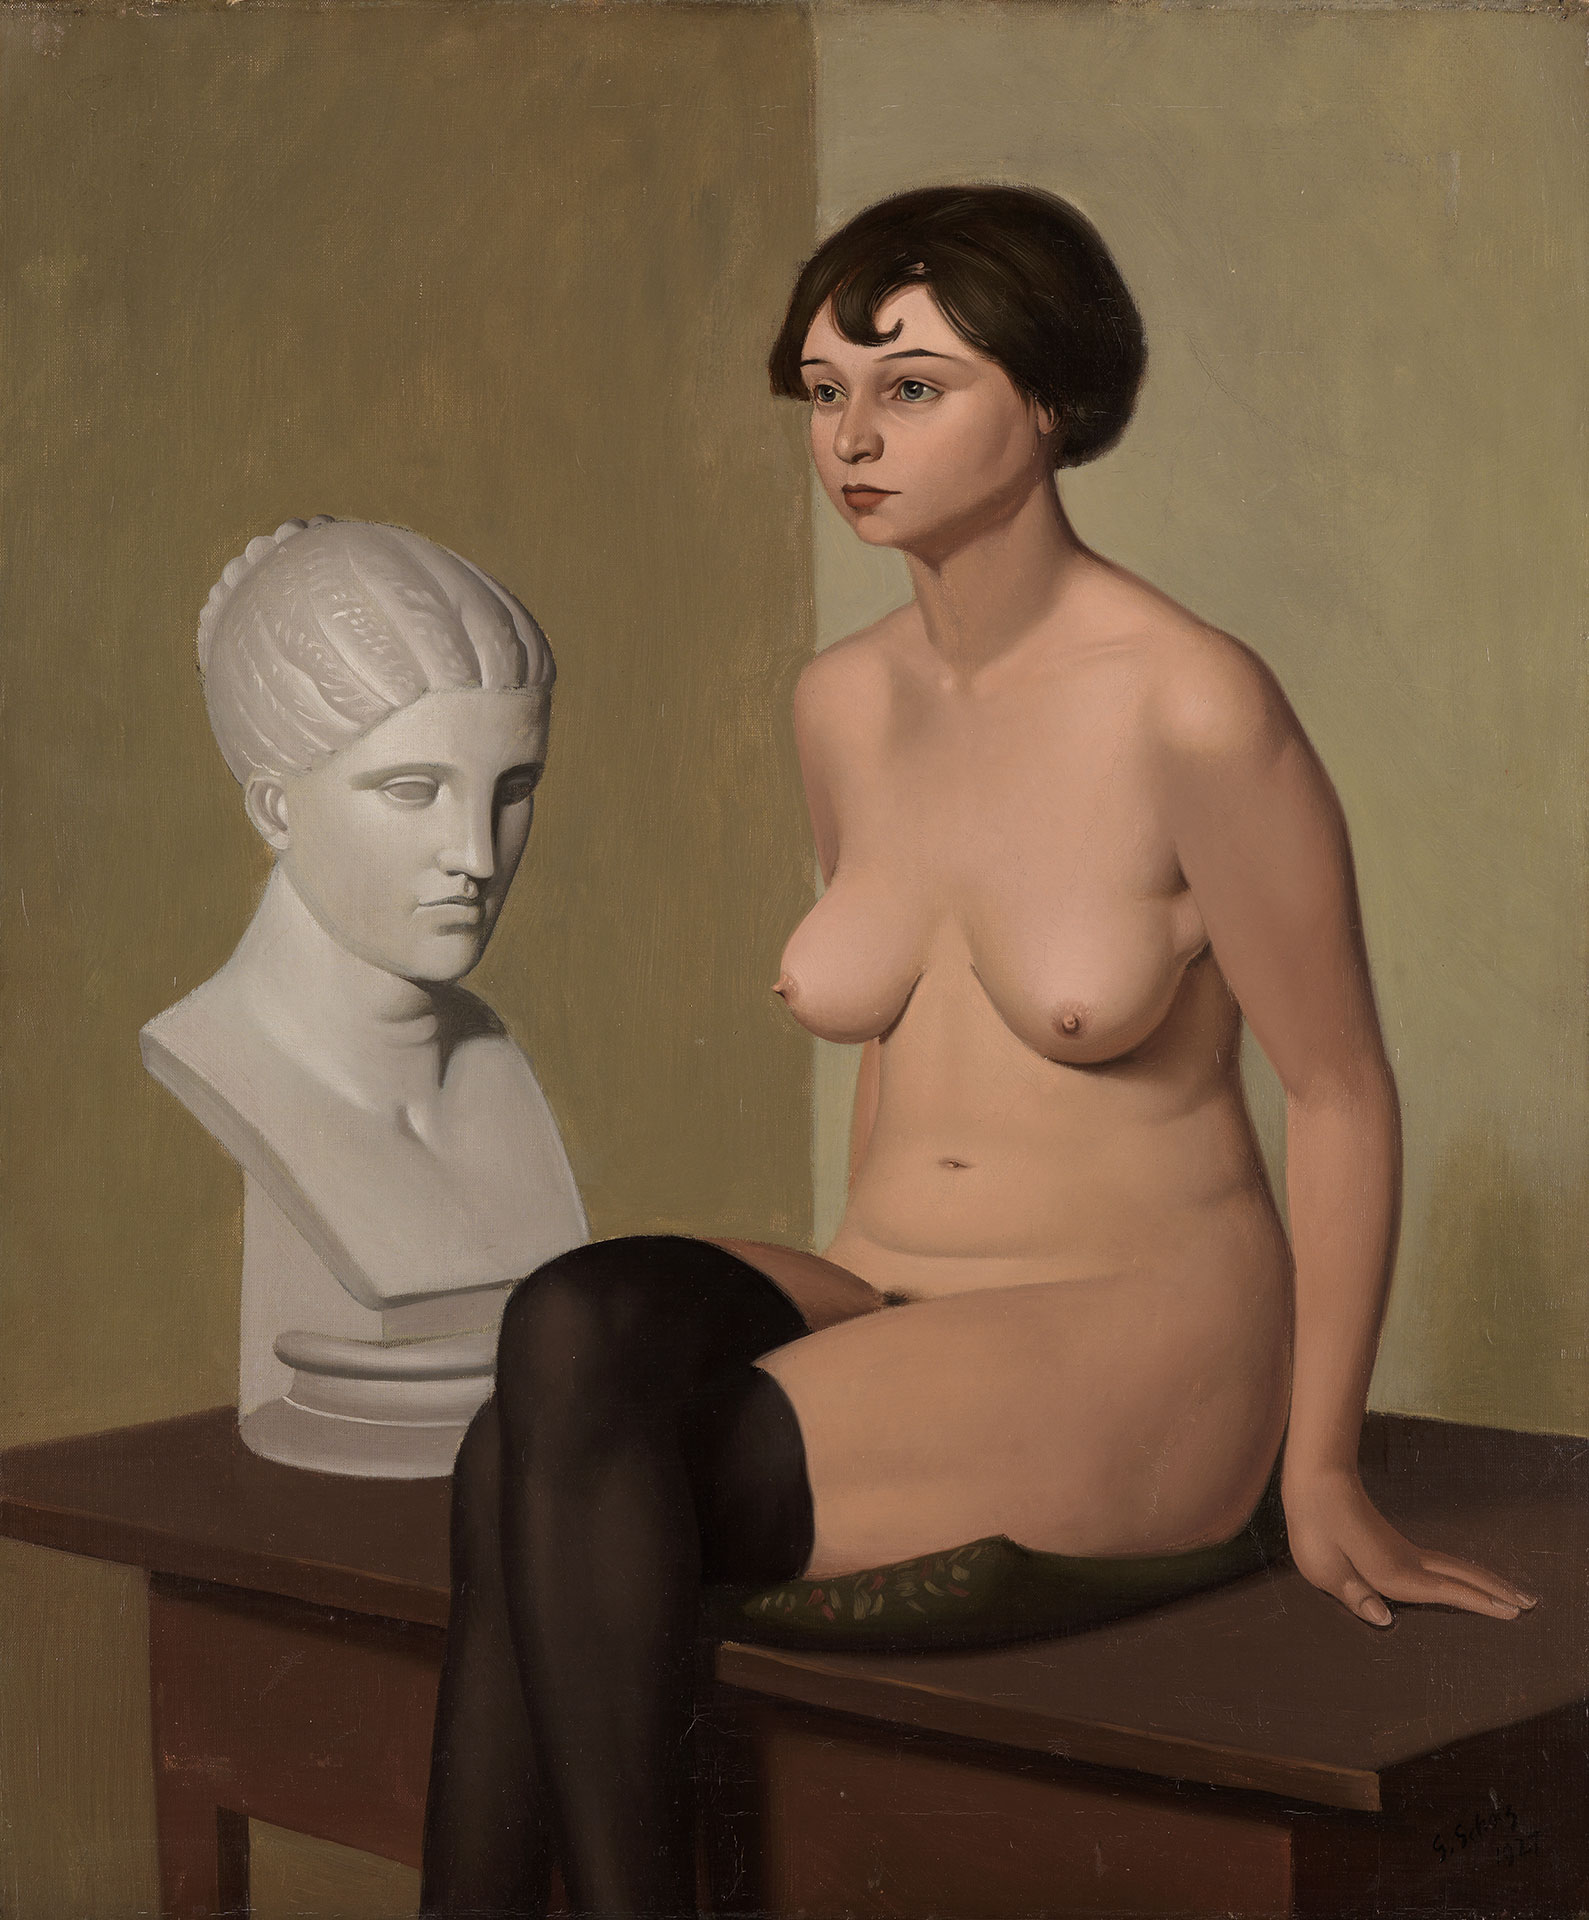 Gemälde Weiblicher Akt mit Gipskopf von Georg Scholz, entstanden 1927. Es zeigt eine nur mit schwarzen Nylonstrümpfe bekleidete Frau auf einem Tisch sitzend. Neben ihr ist eine Büste einer Frau.